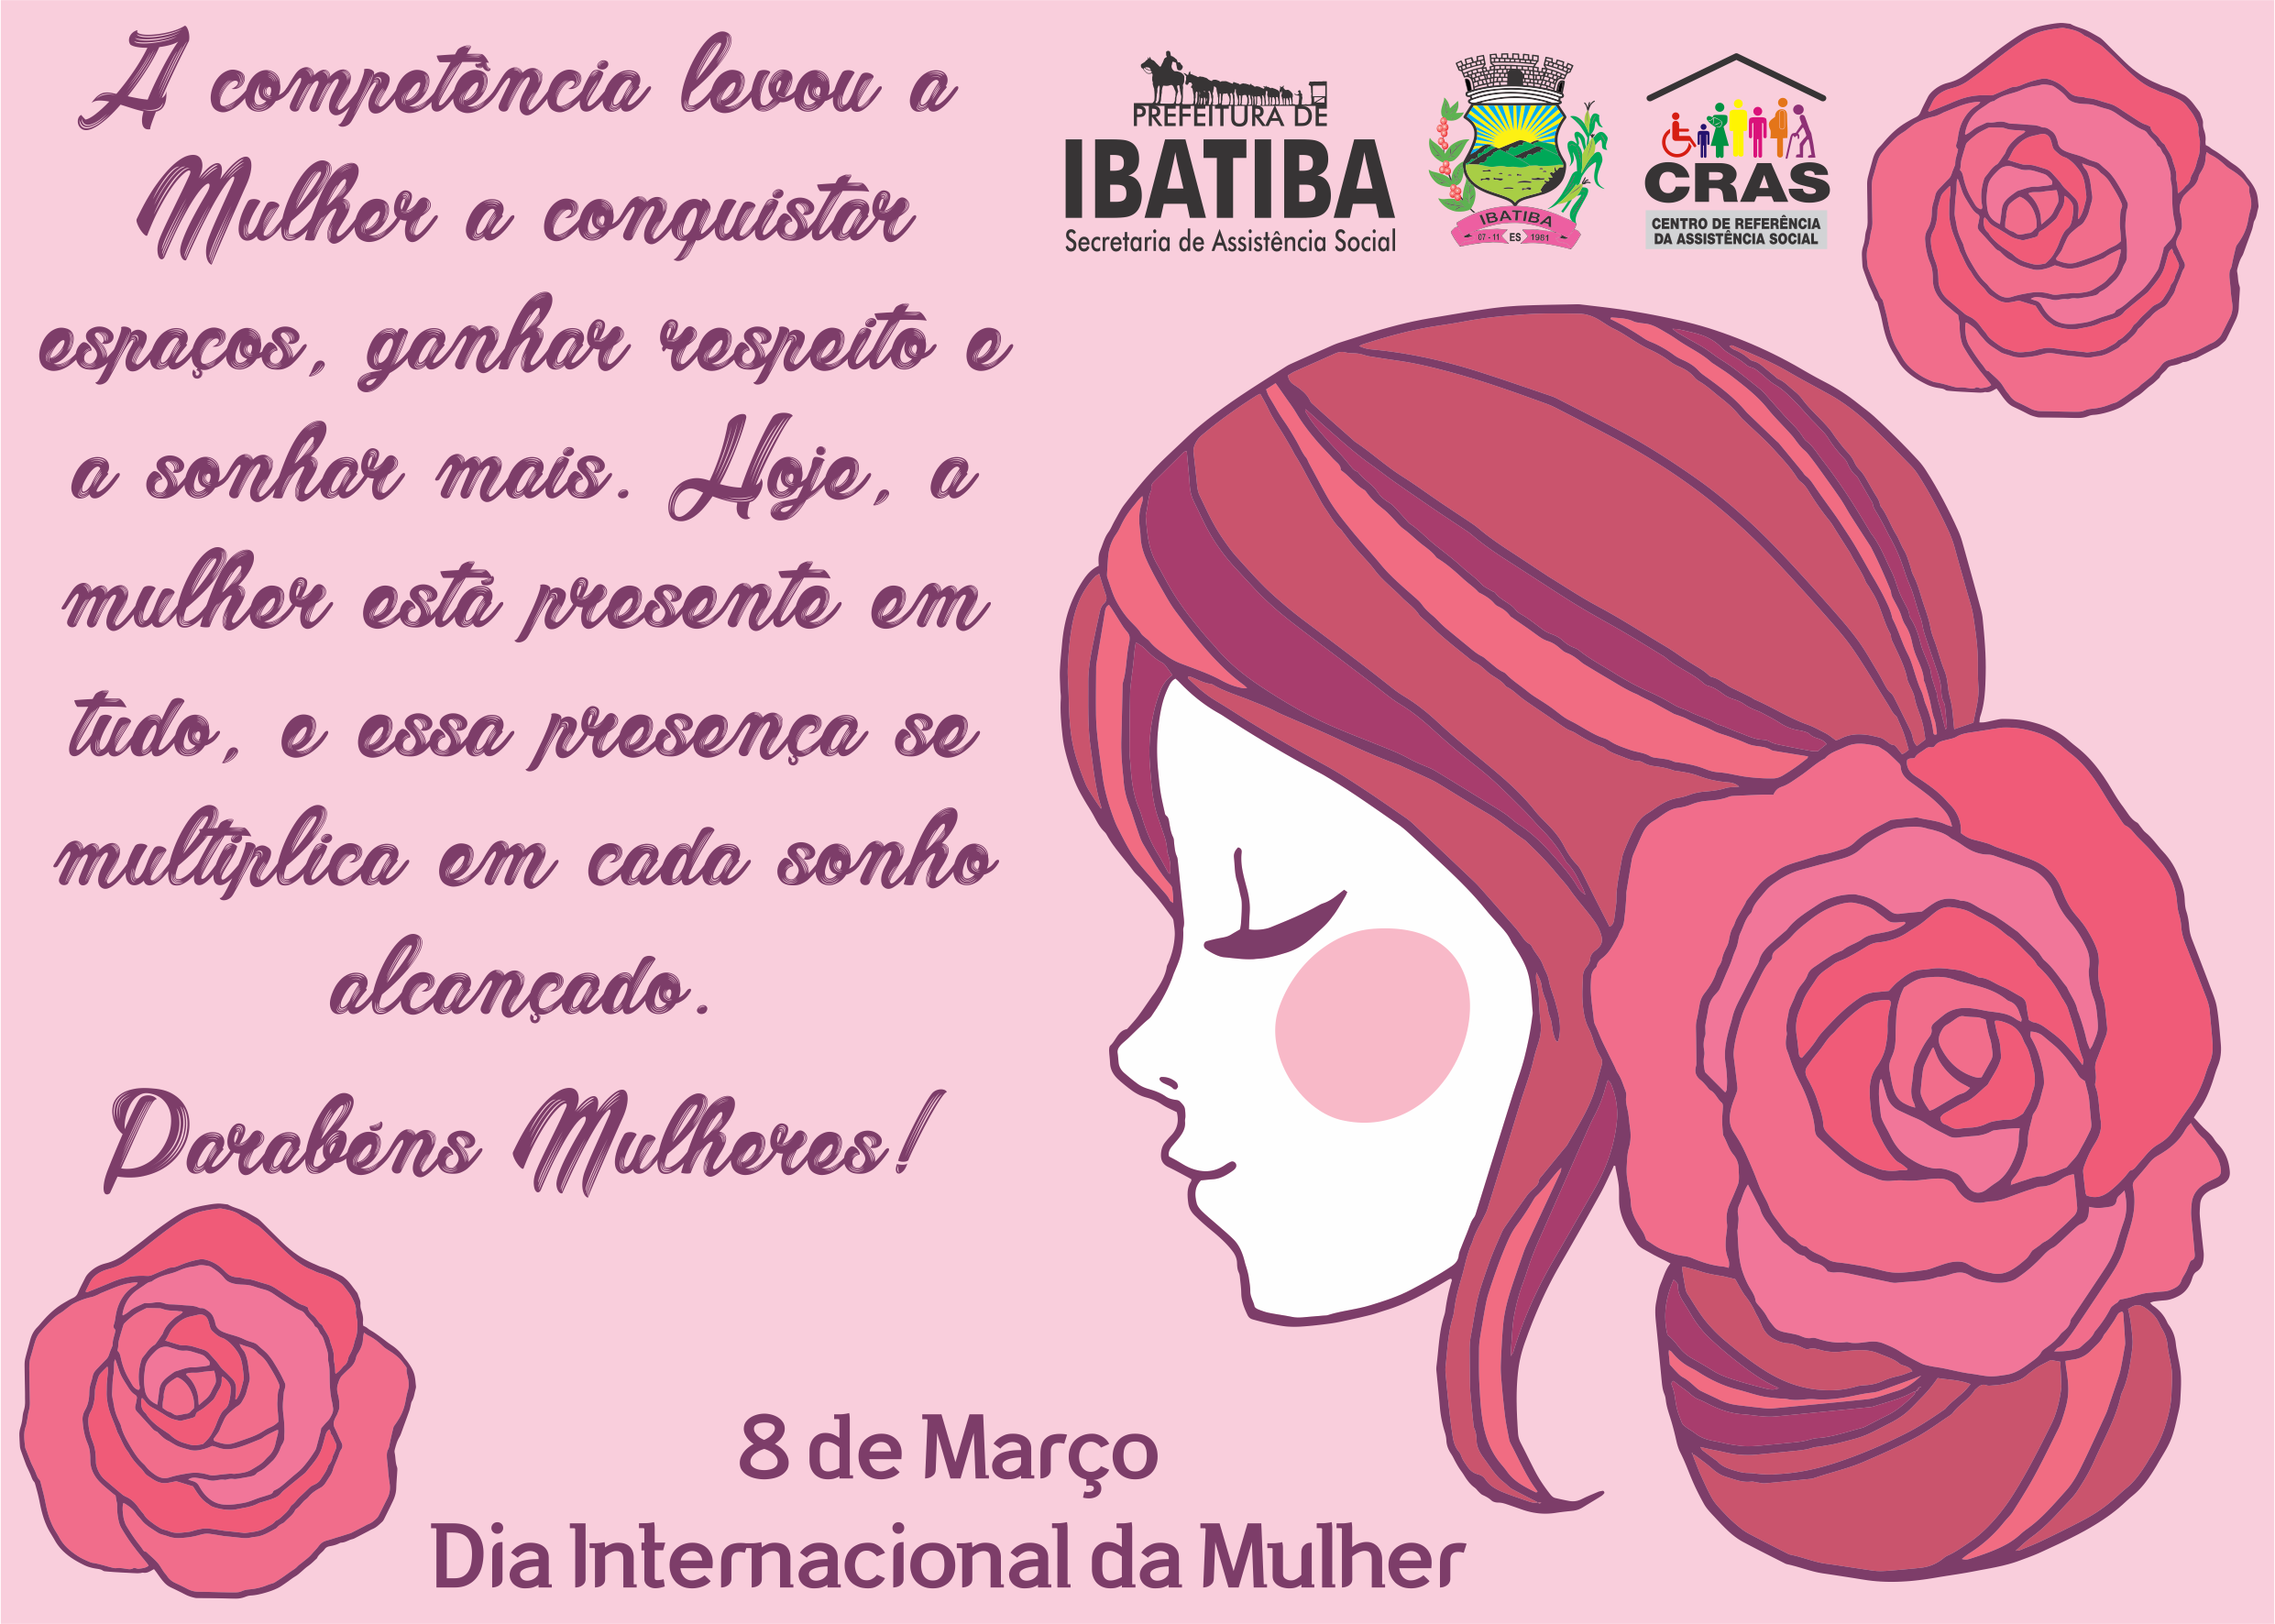 Dia da Mulher será comemorado com várias ações em Ibatiba